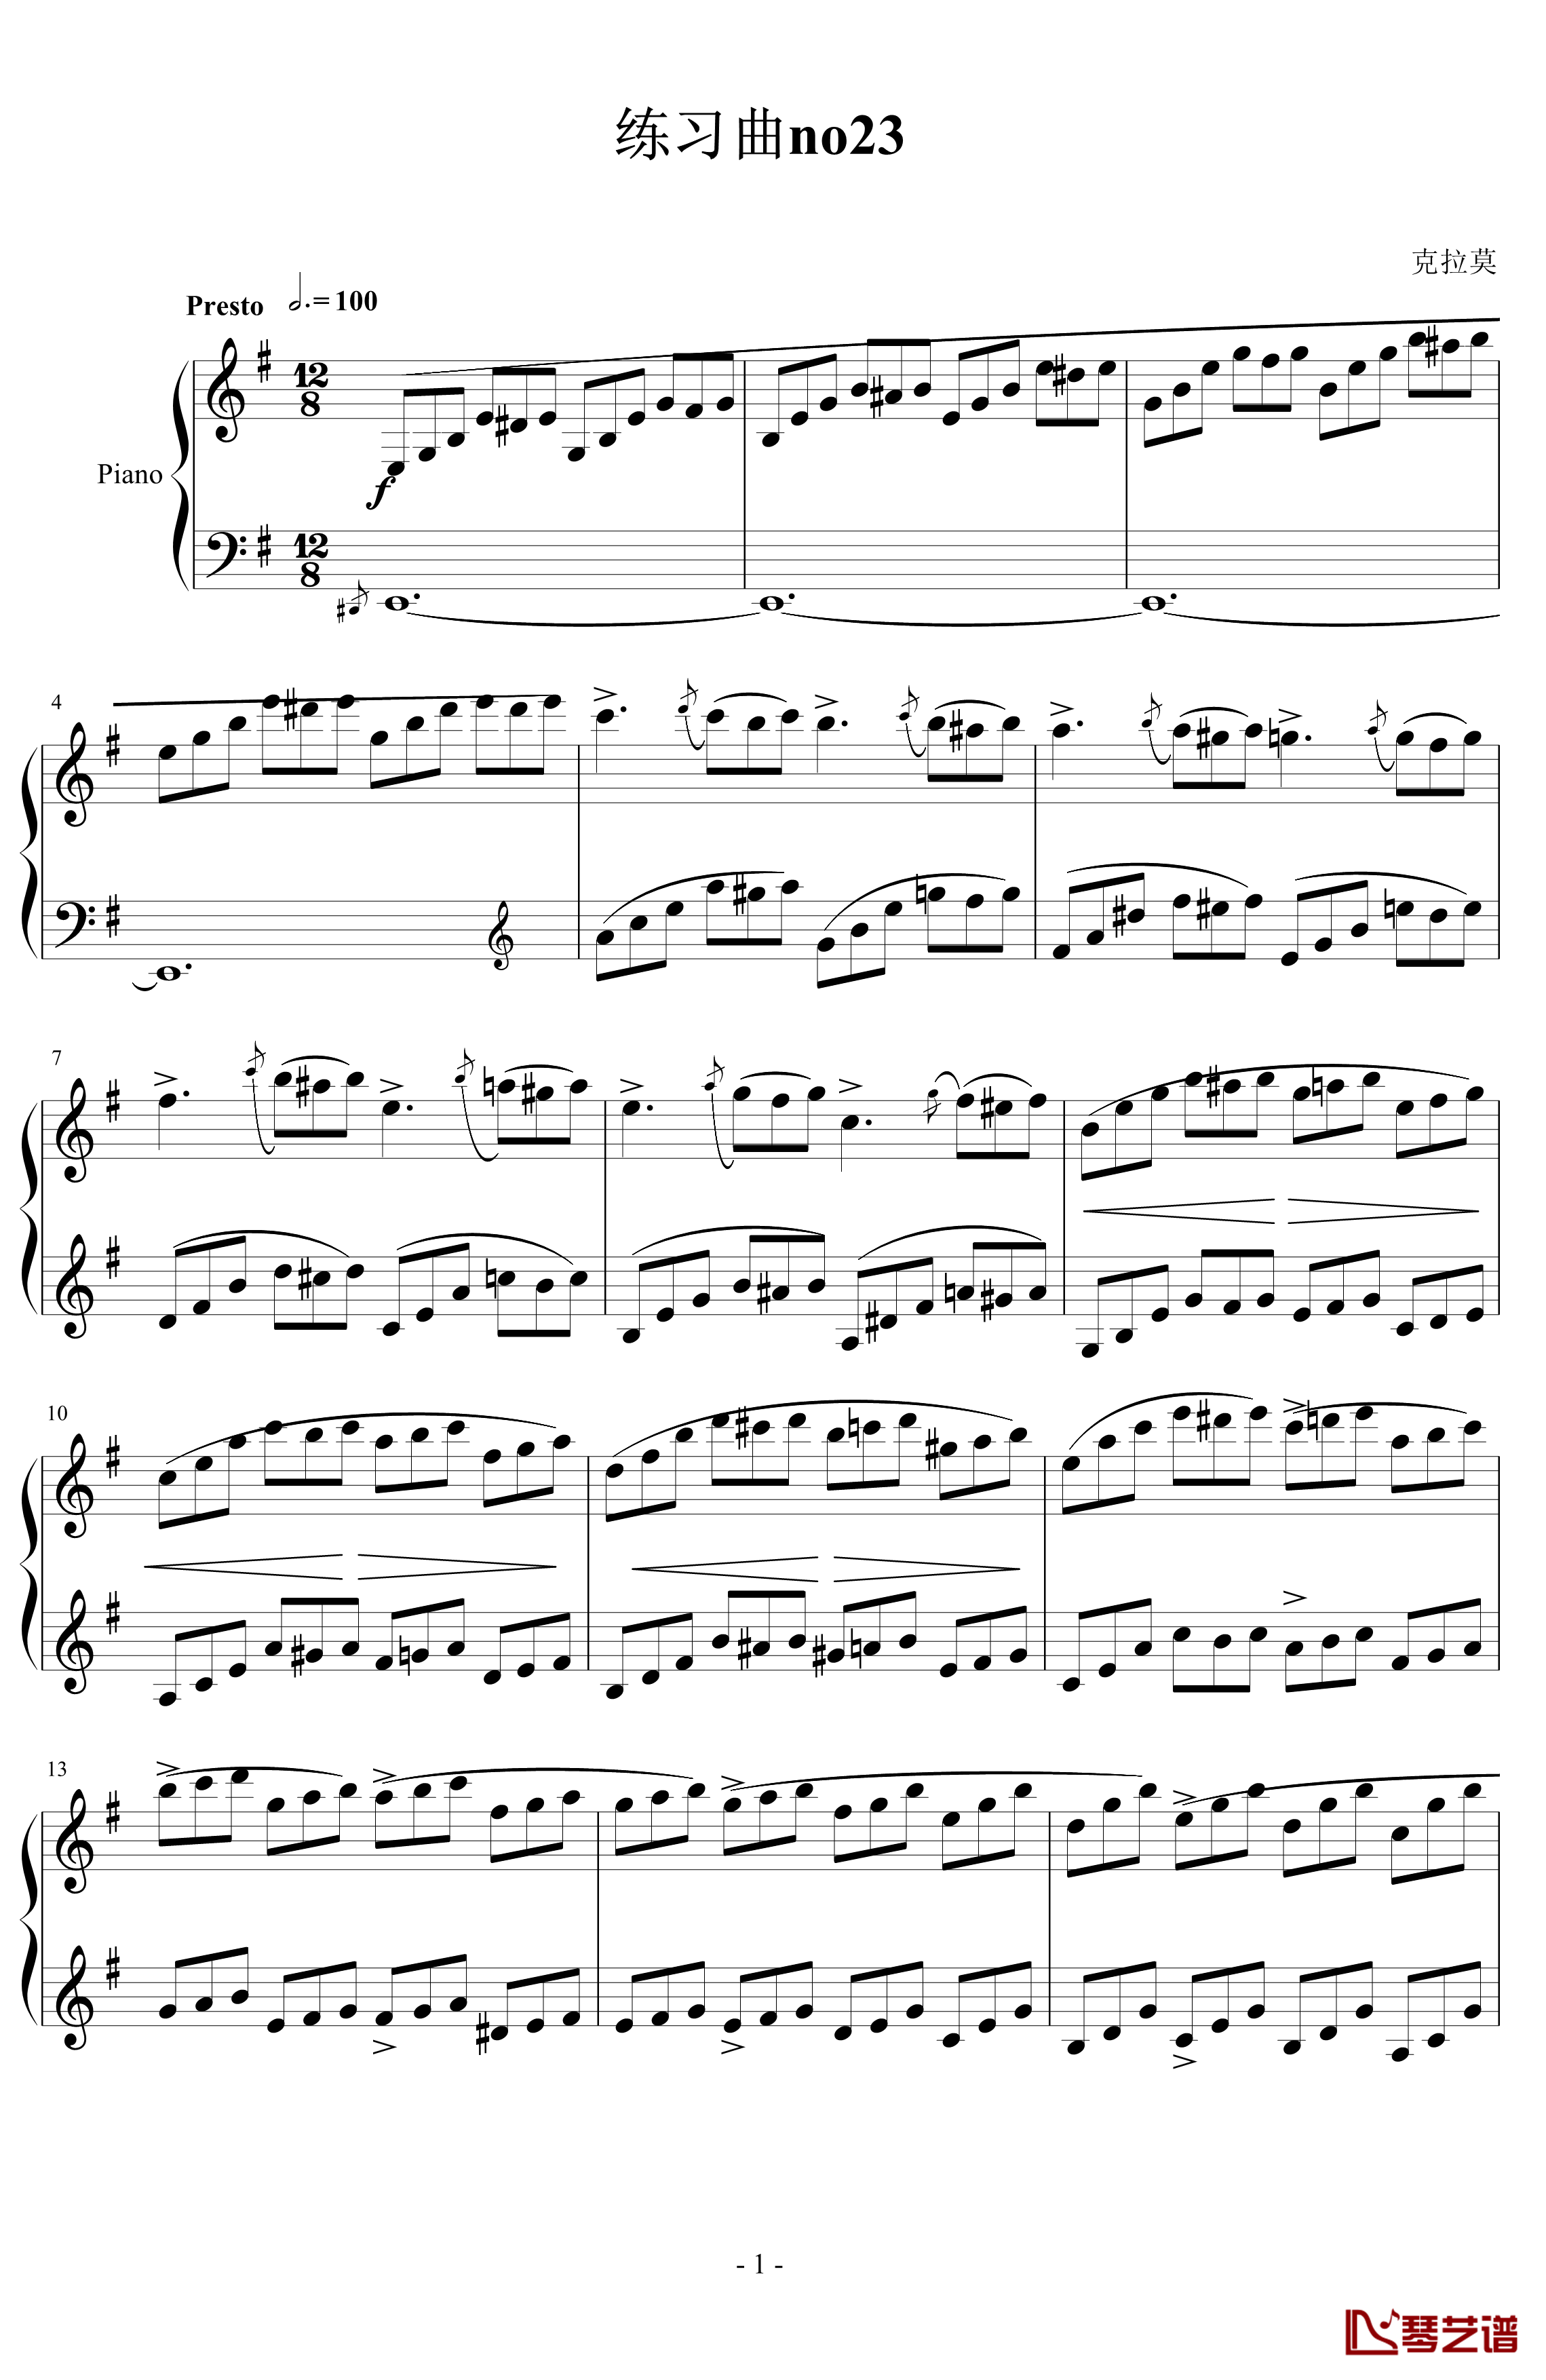 克拉莫练习曲第23首钢琴谱-克拉莫1